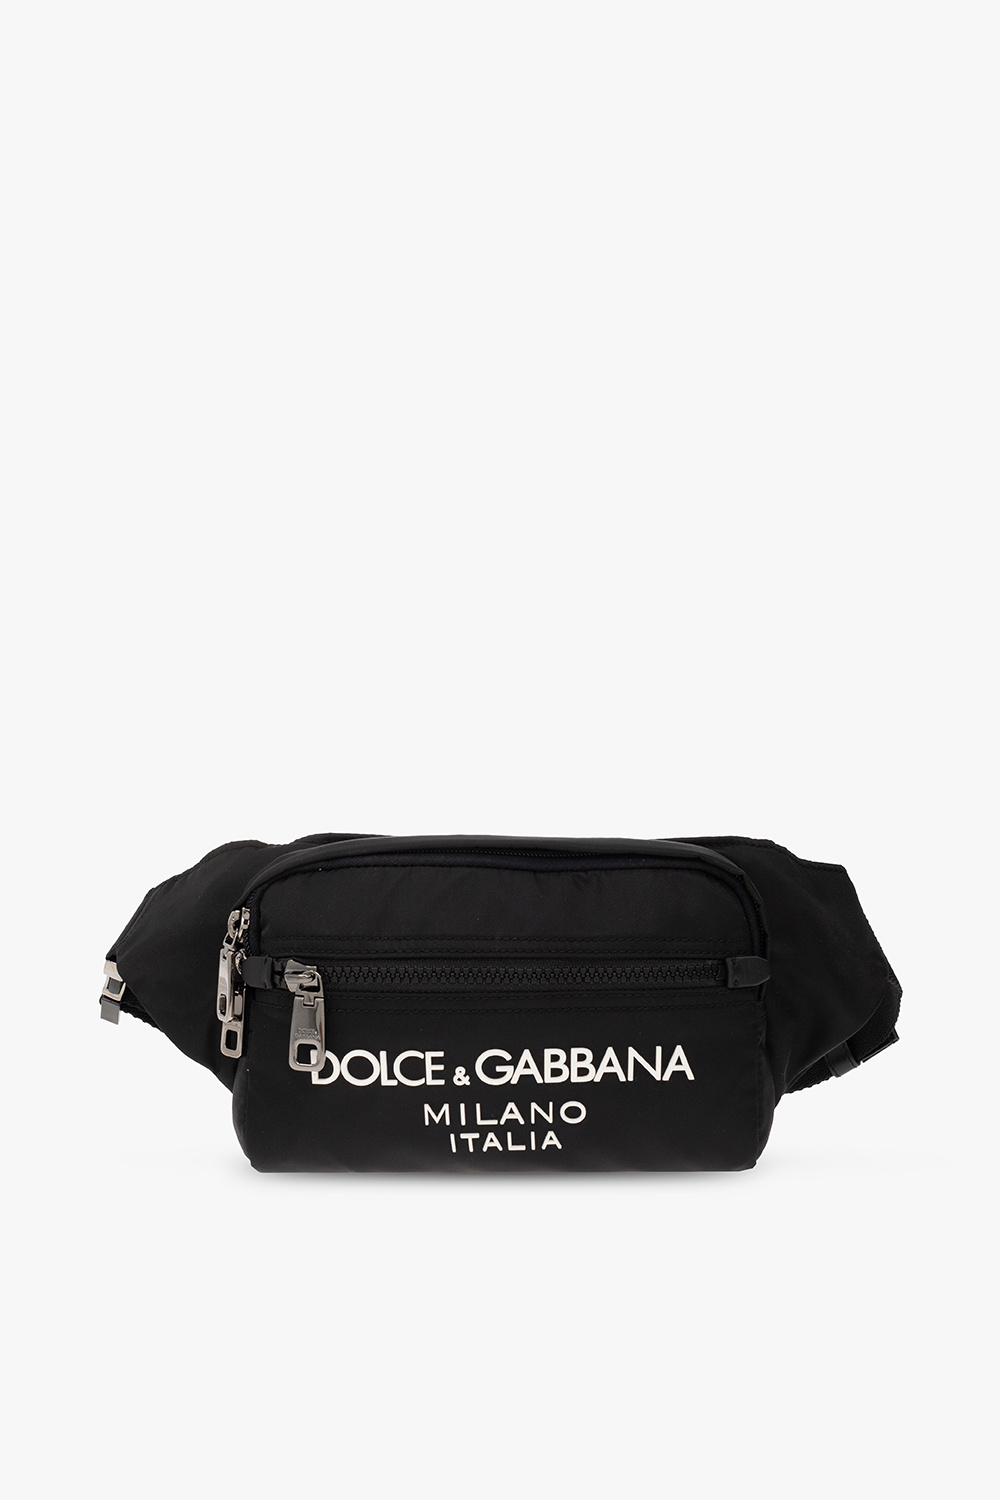 Dolce & Gabbana ‘Sicilia DNA’ belt bag